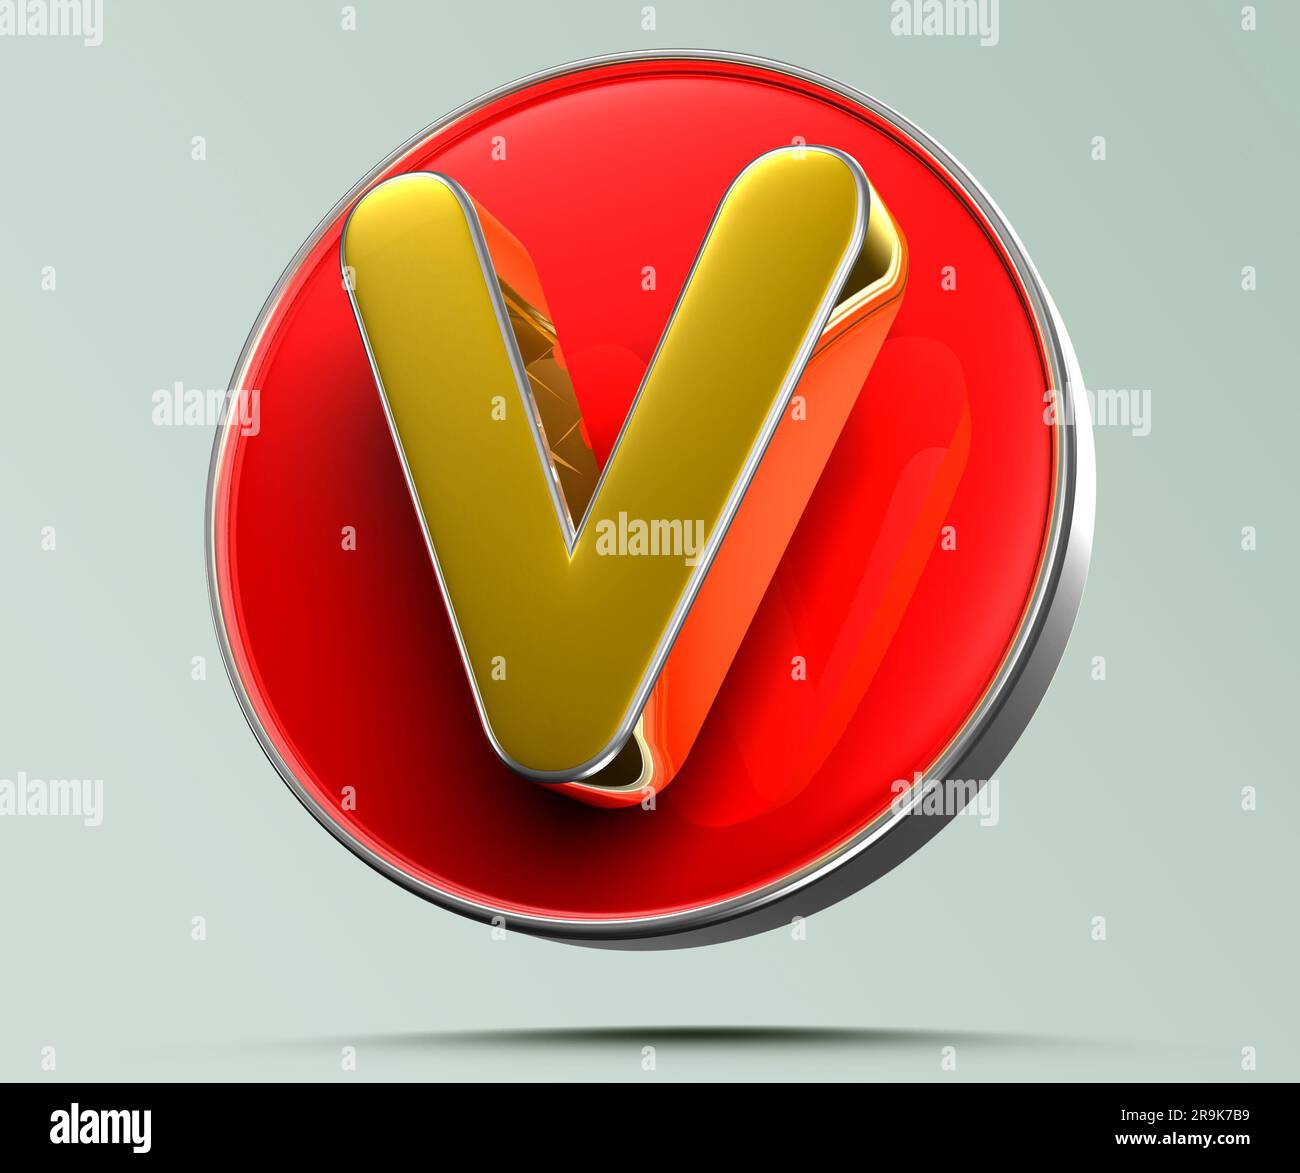 Der Buchstabe V ist goldgelb im roten Kreis. Die Abbildung 3D auf hellgrauem Hintergrund weist einen Arbeitspfad auf. Werbeschilder. Produktdesign. Produktverkäufe. Produkt Stockfoto